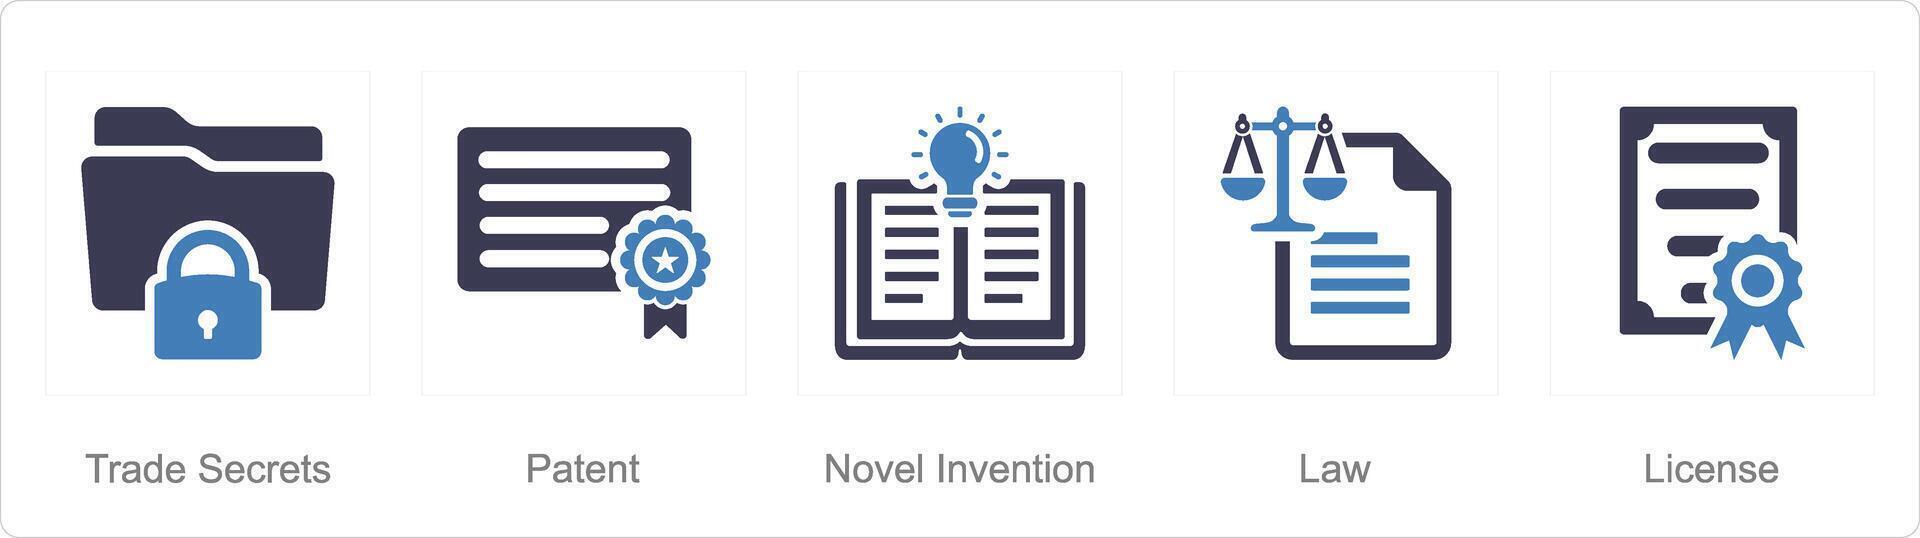 un' impostato di 5 intellettuale proprietà icone come commercio segreti, brevetto, romanzo invenzione vettore